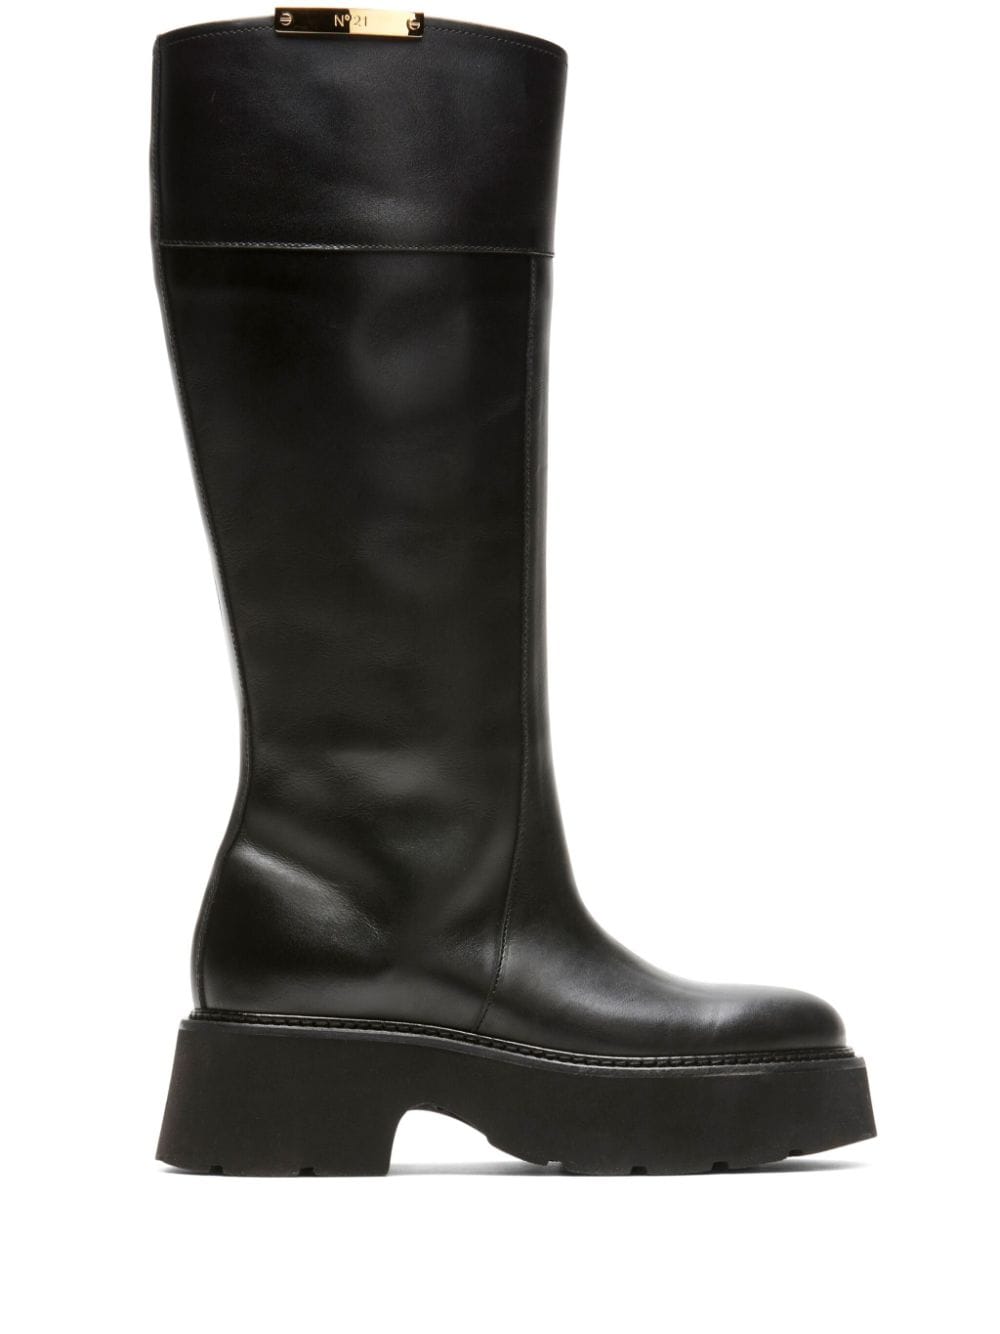 Nº21 Schuhe knee-high leather boots - Black von Nº21